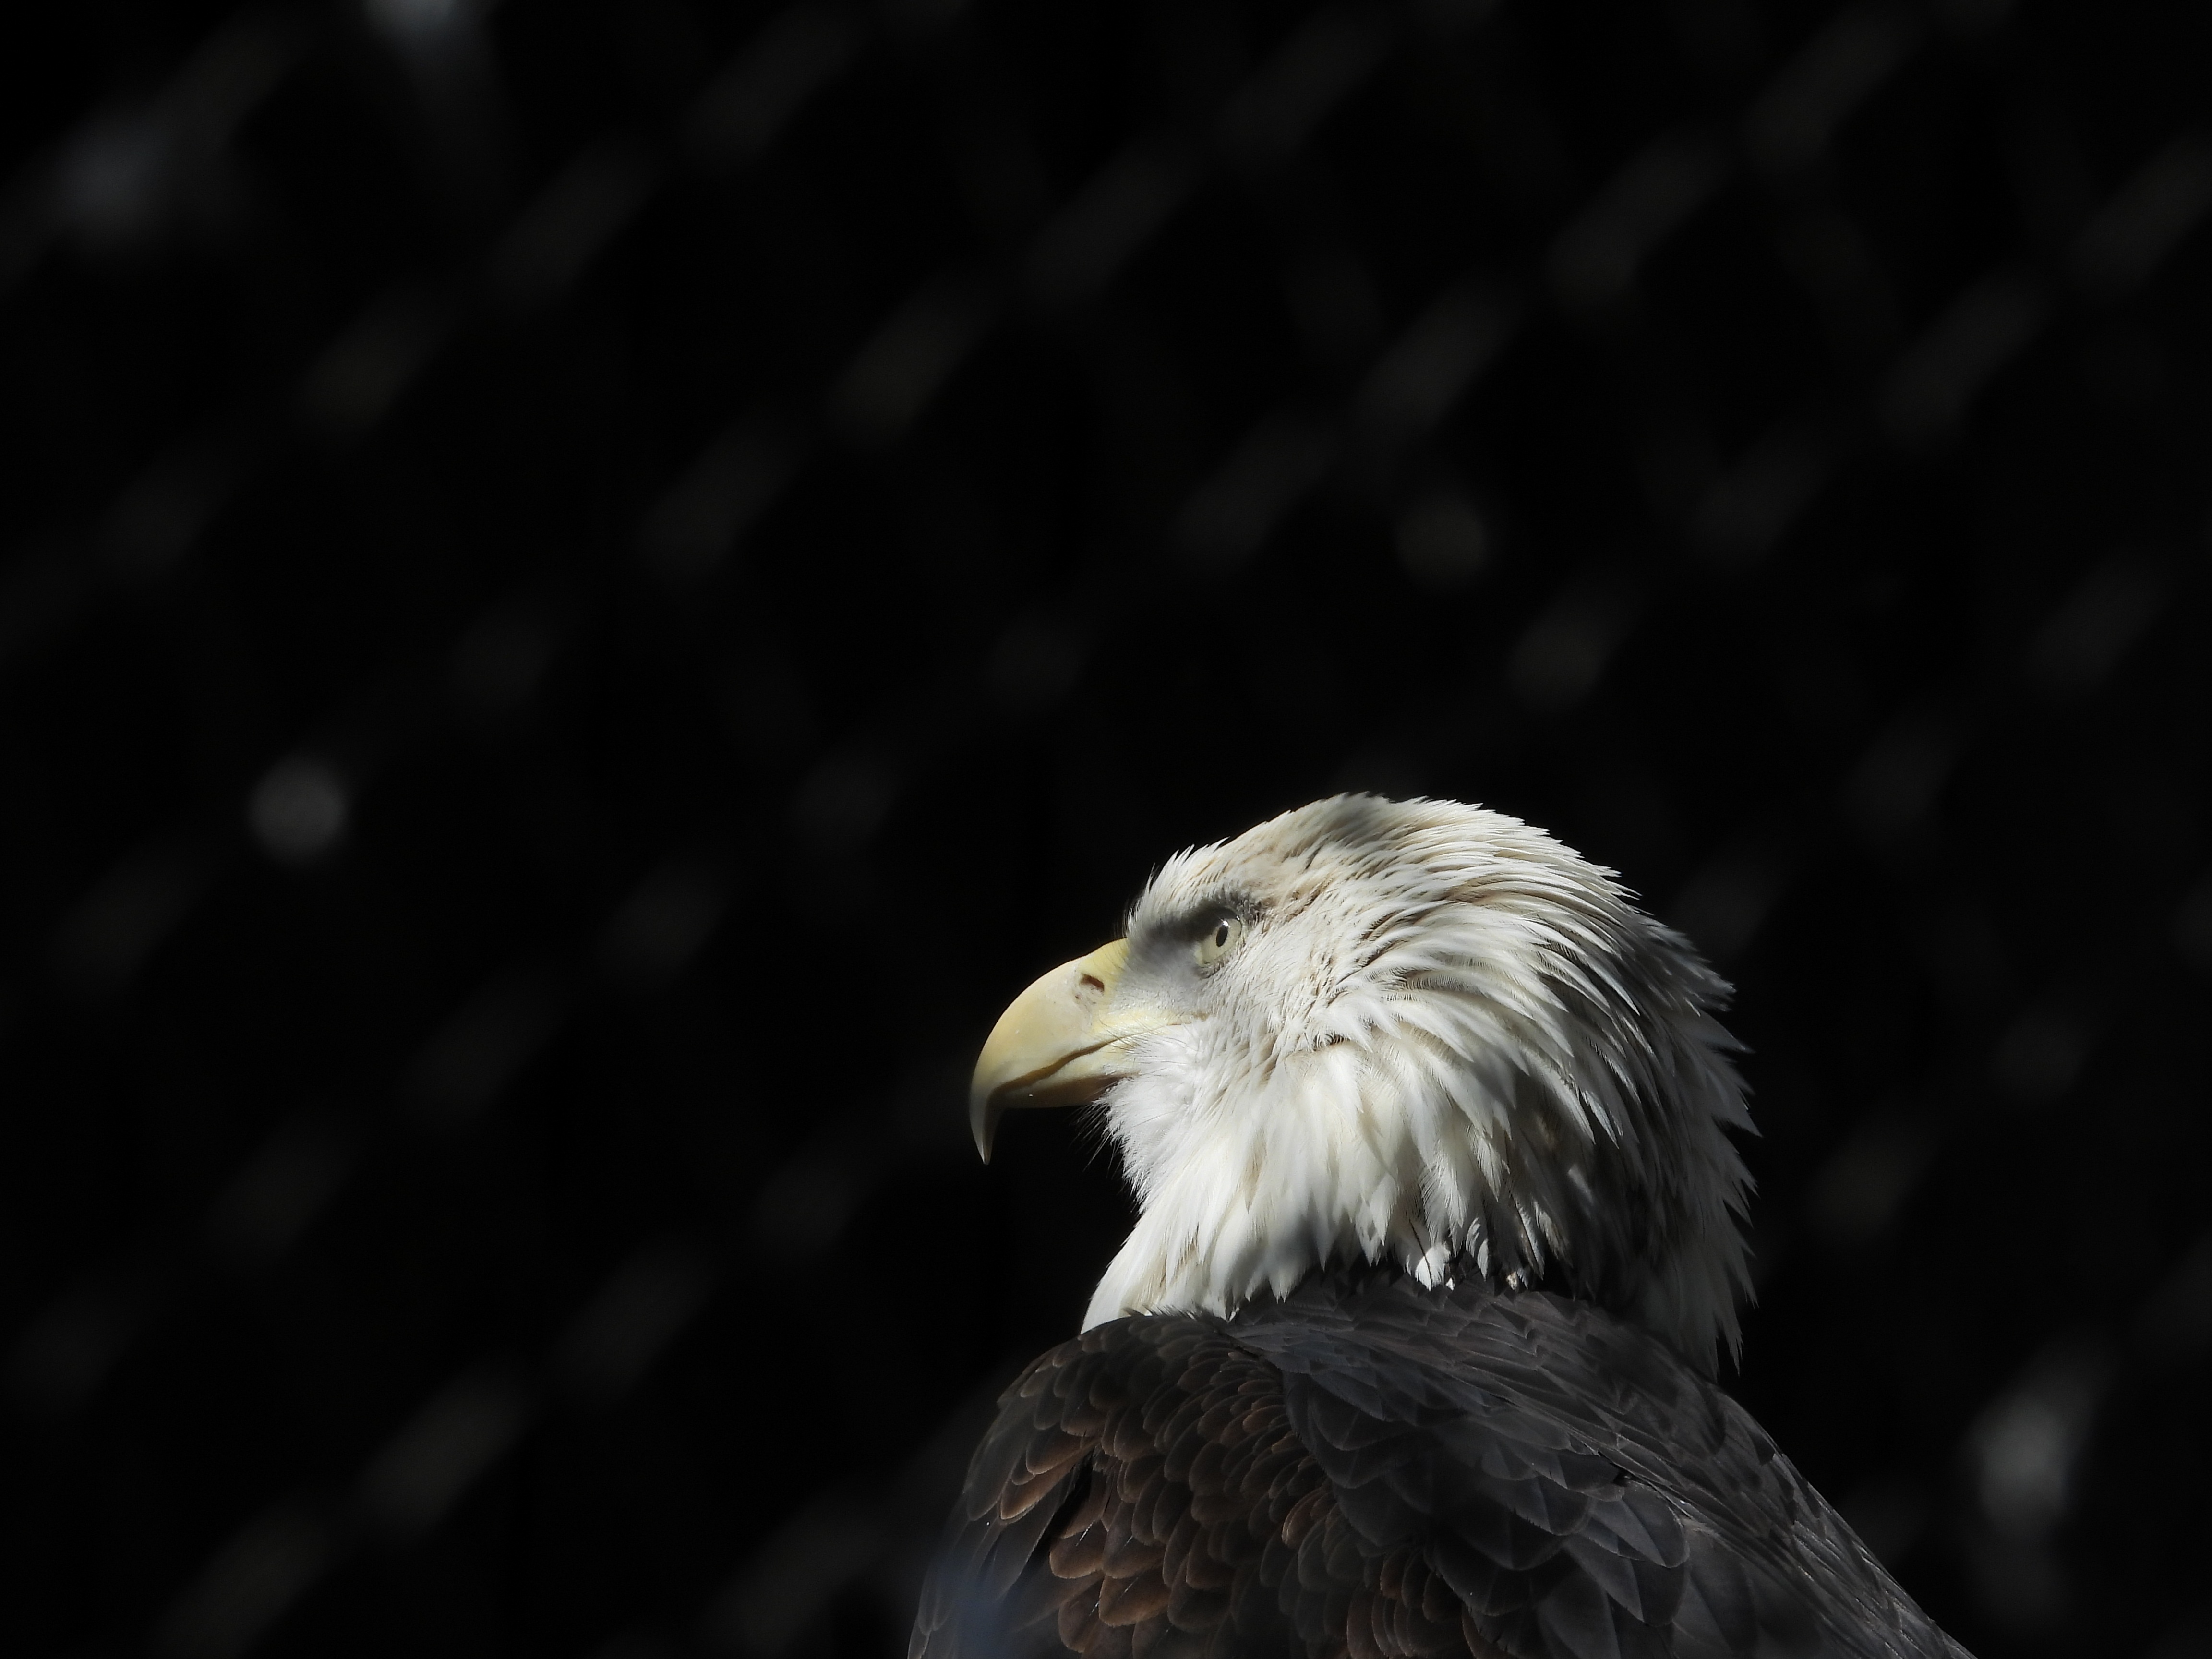 Fondos de Pantalla Águila en Blanco y Negro en Fotografía de Cerca,  Imágenes y Fotos Gratis